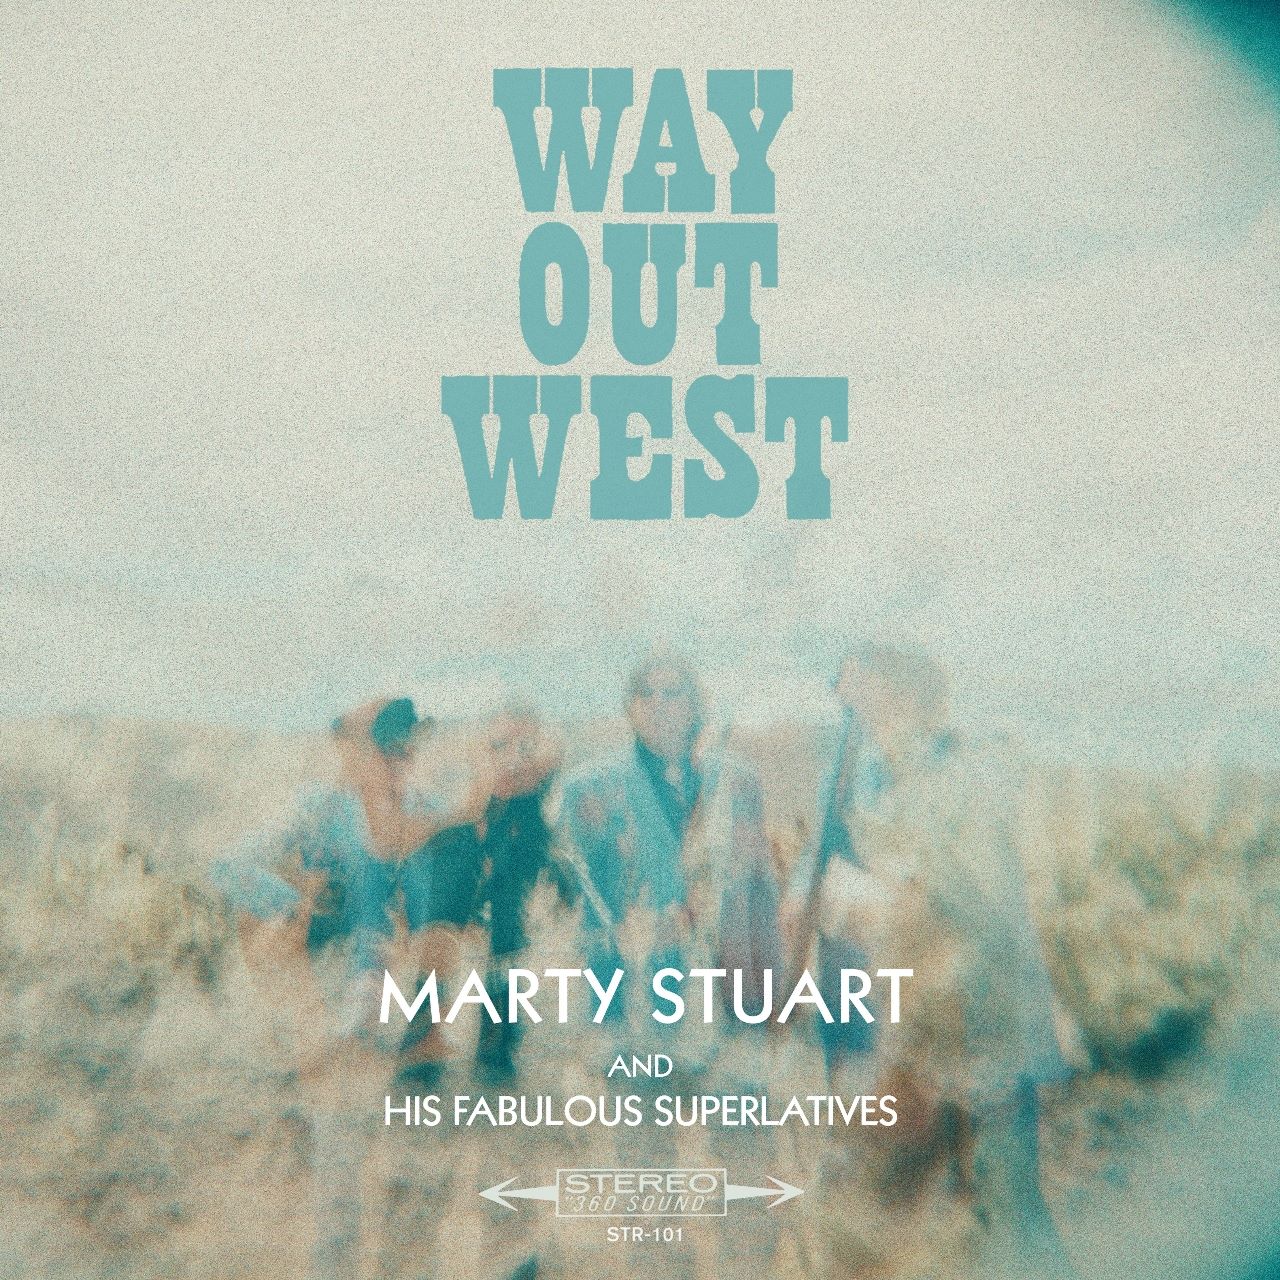 Marty Stuart - Way Out West cover album